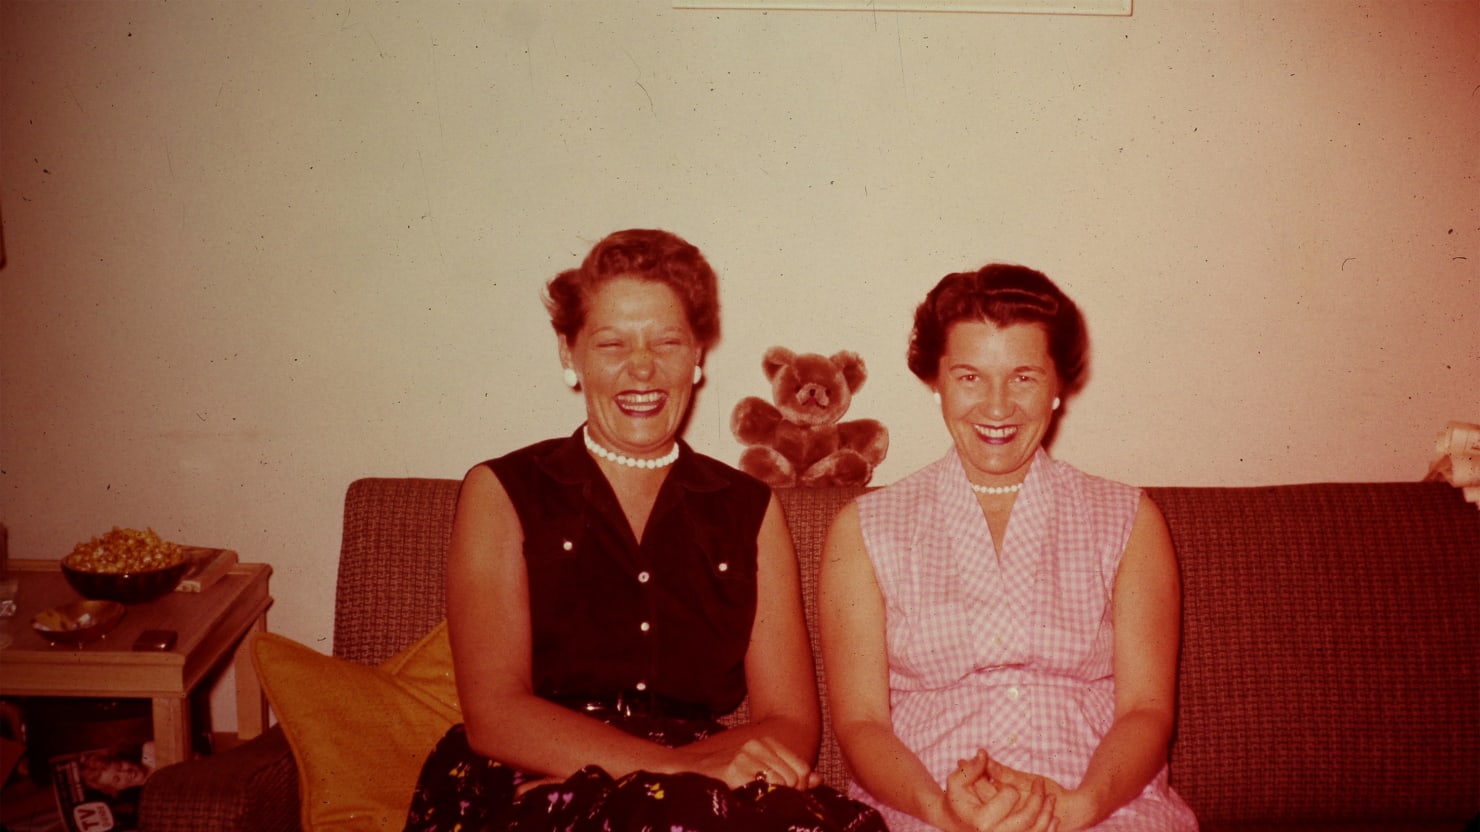 Netflixs A Secret Love Details a Hidden 70-Year Lesbian Affair That Began in 1947 image